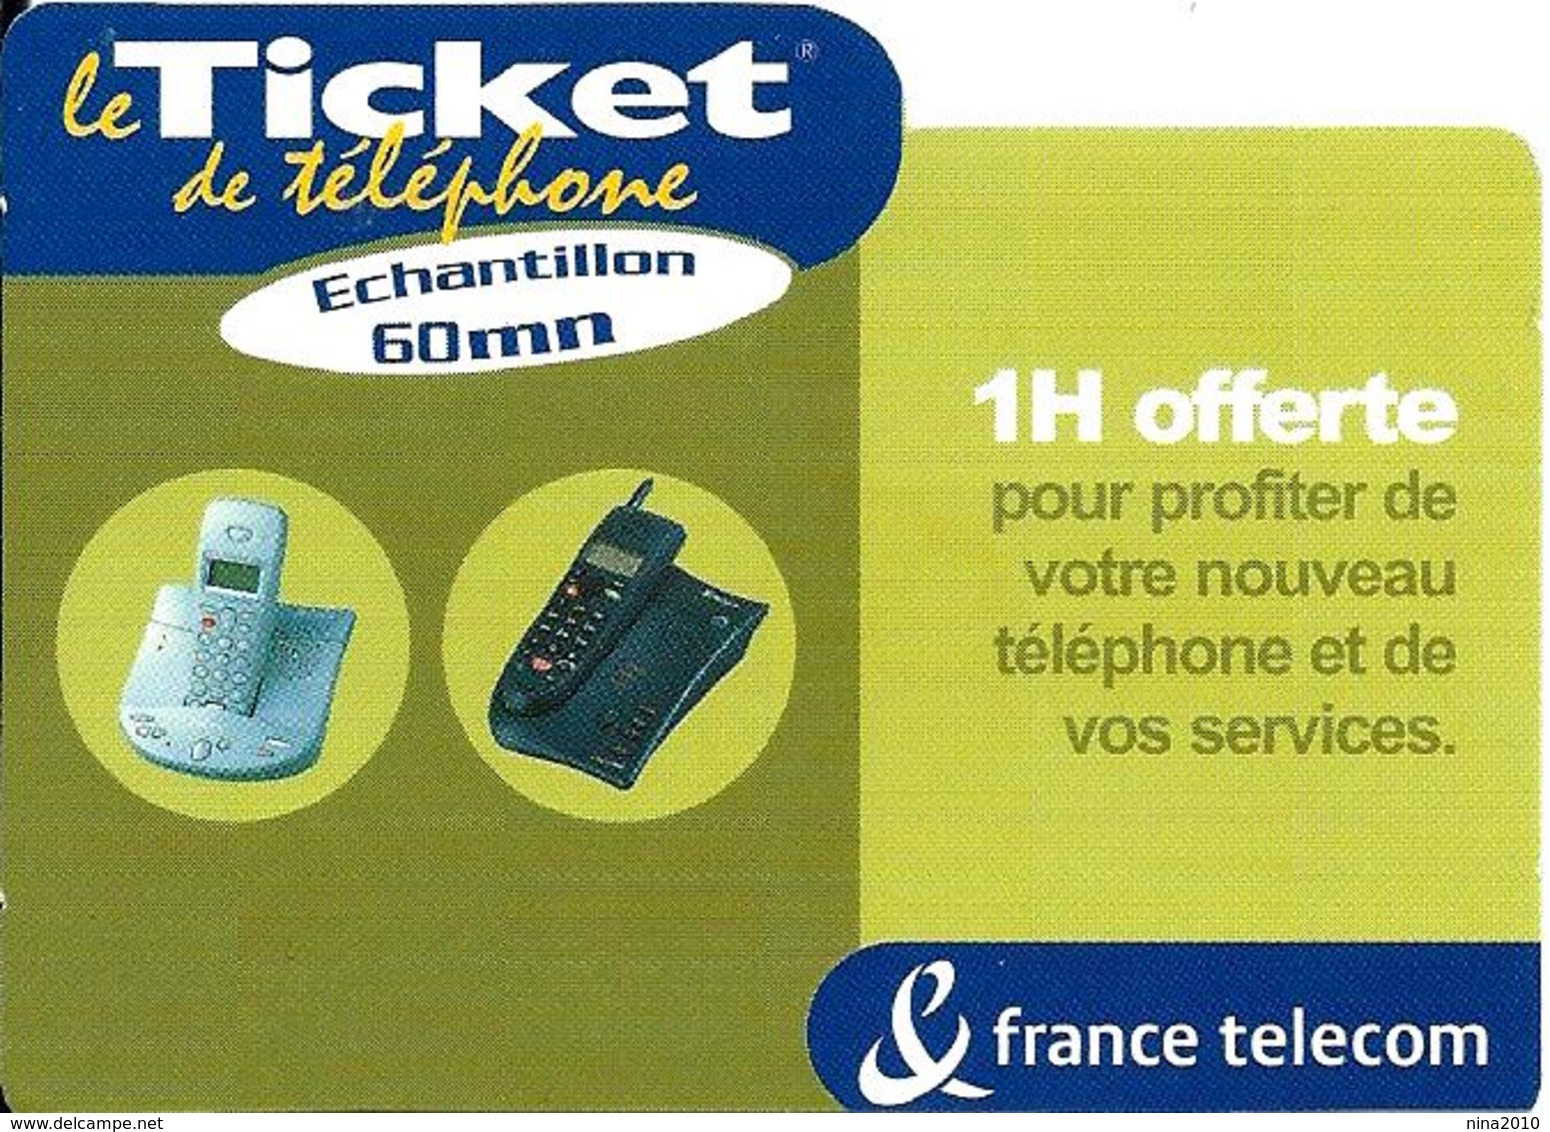 Ticket De Téléphone Privé - 1 H Offerte - 60 000 Ex. (luxe) - 15/11/2002 - FT Tickets